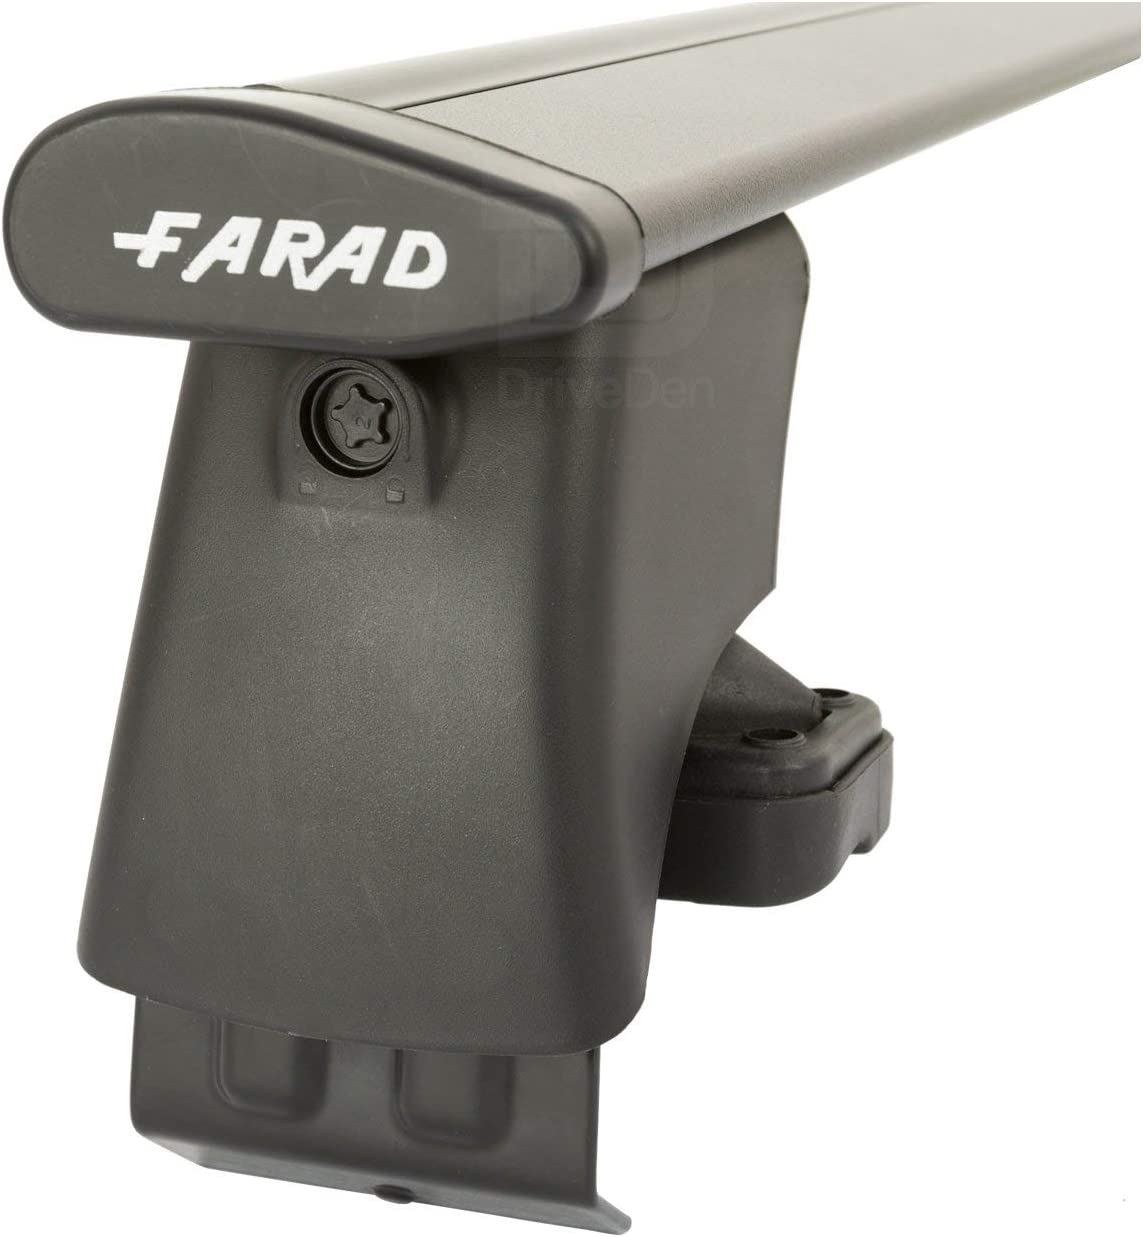 FARAD-Kit H2 per barre portatutto - Skoda Octavia 2013-2020 (senza corrimano)